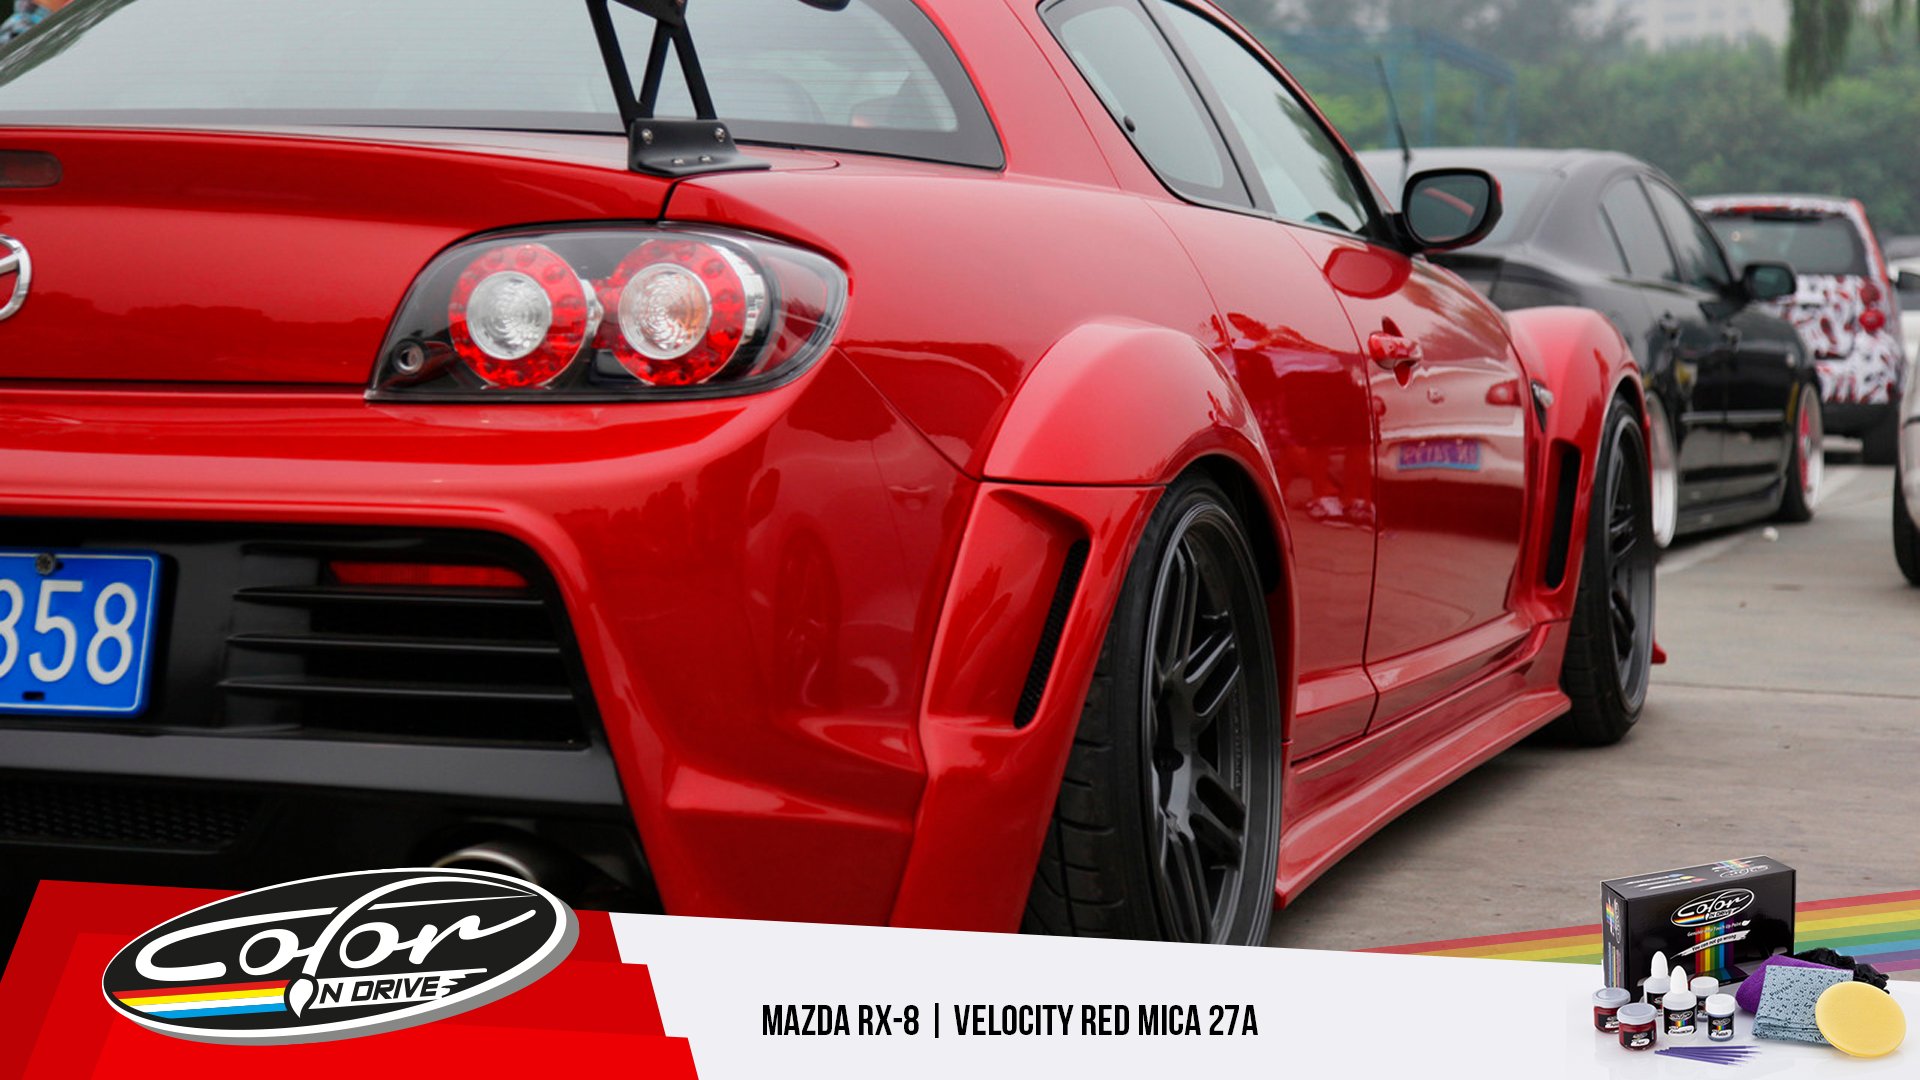 Martyr i tilfælde af dele Color N Drive on Twitter: "Mazda Rx-8 Velocity Red Mica 27A Shop Now:  https://t.co/e9fv1ZLKeQ #amazing #cars #colorndrive #mazdarx8 #rx8 #mazda  https://t.co/8Ncq4TEK7c" / Twitter